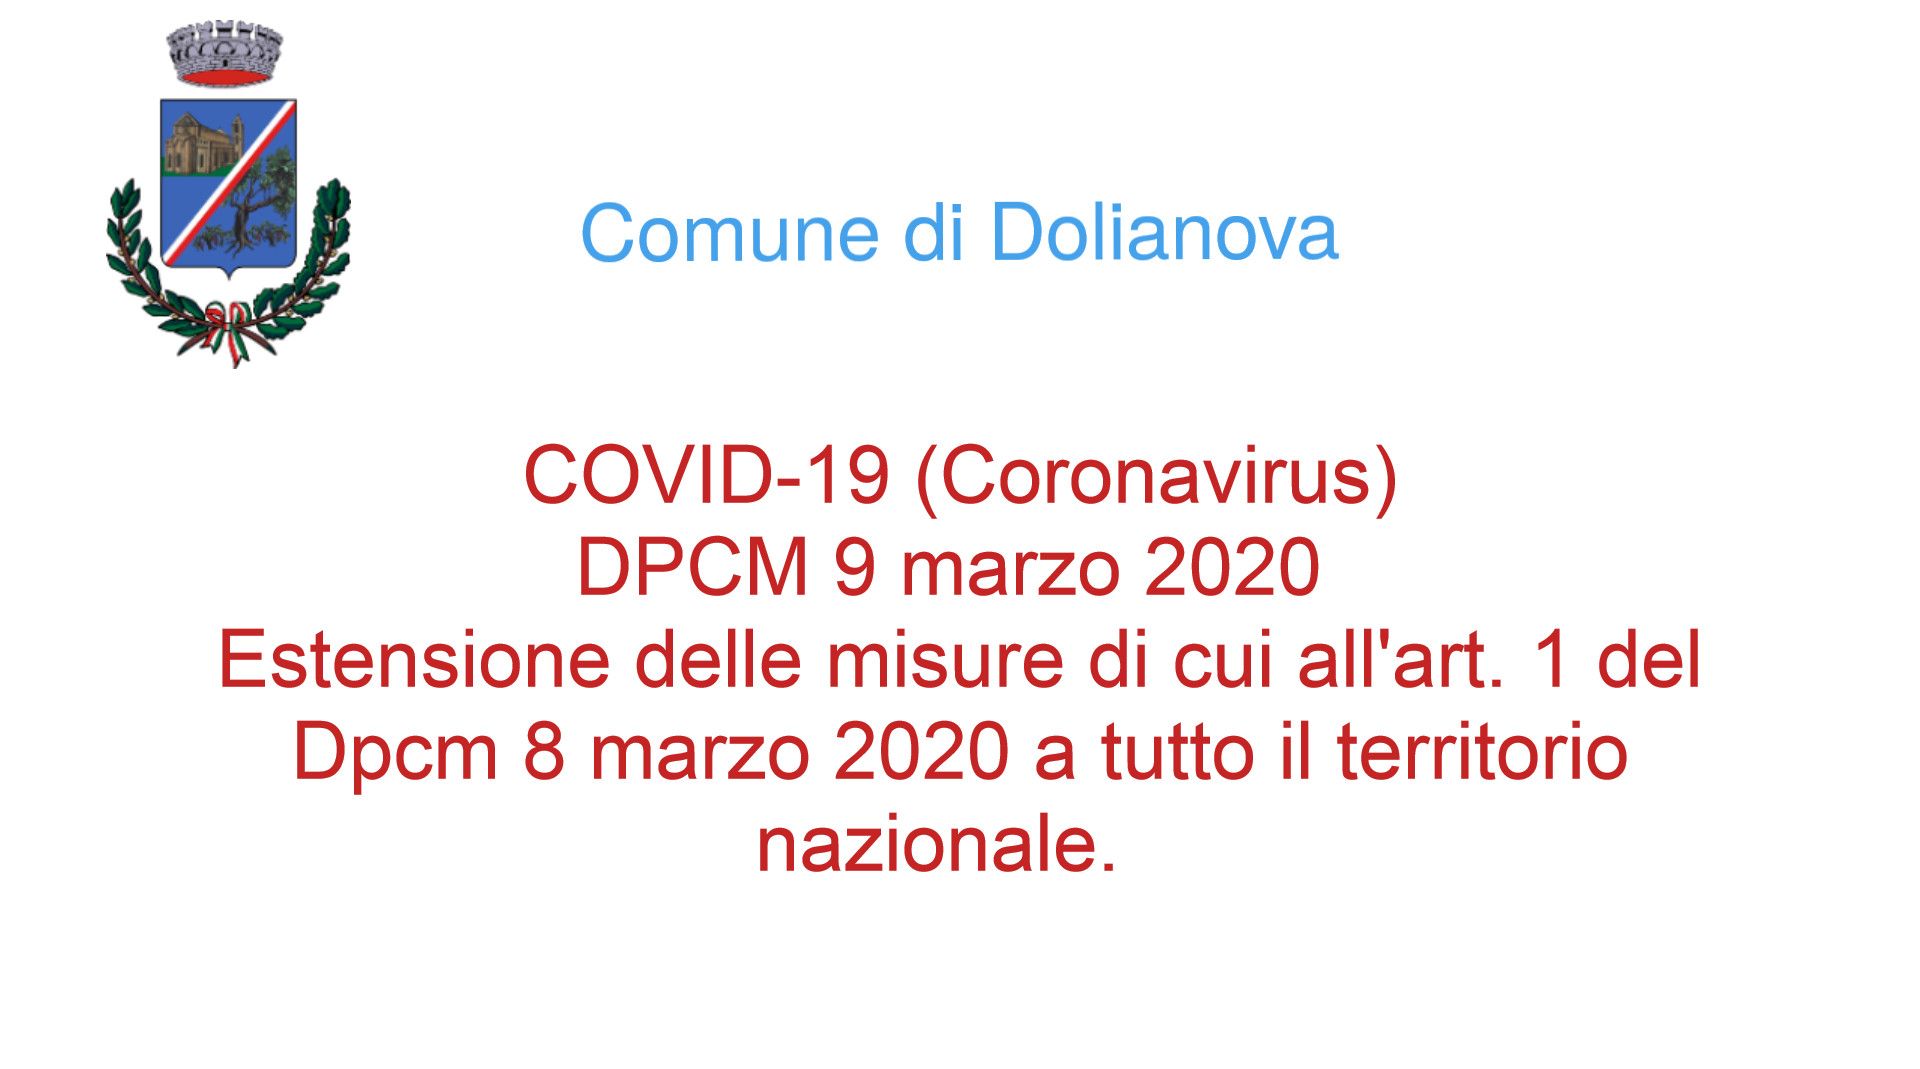 Covid-19 (Coronavirus) firmato il DPCM 9 marzo 2020